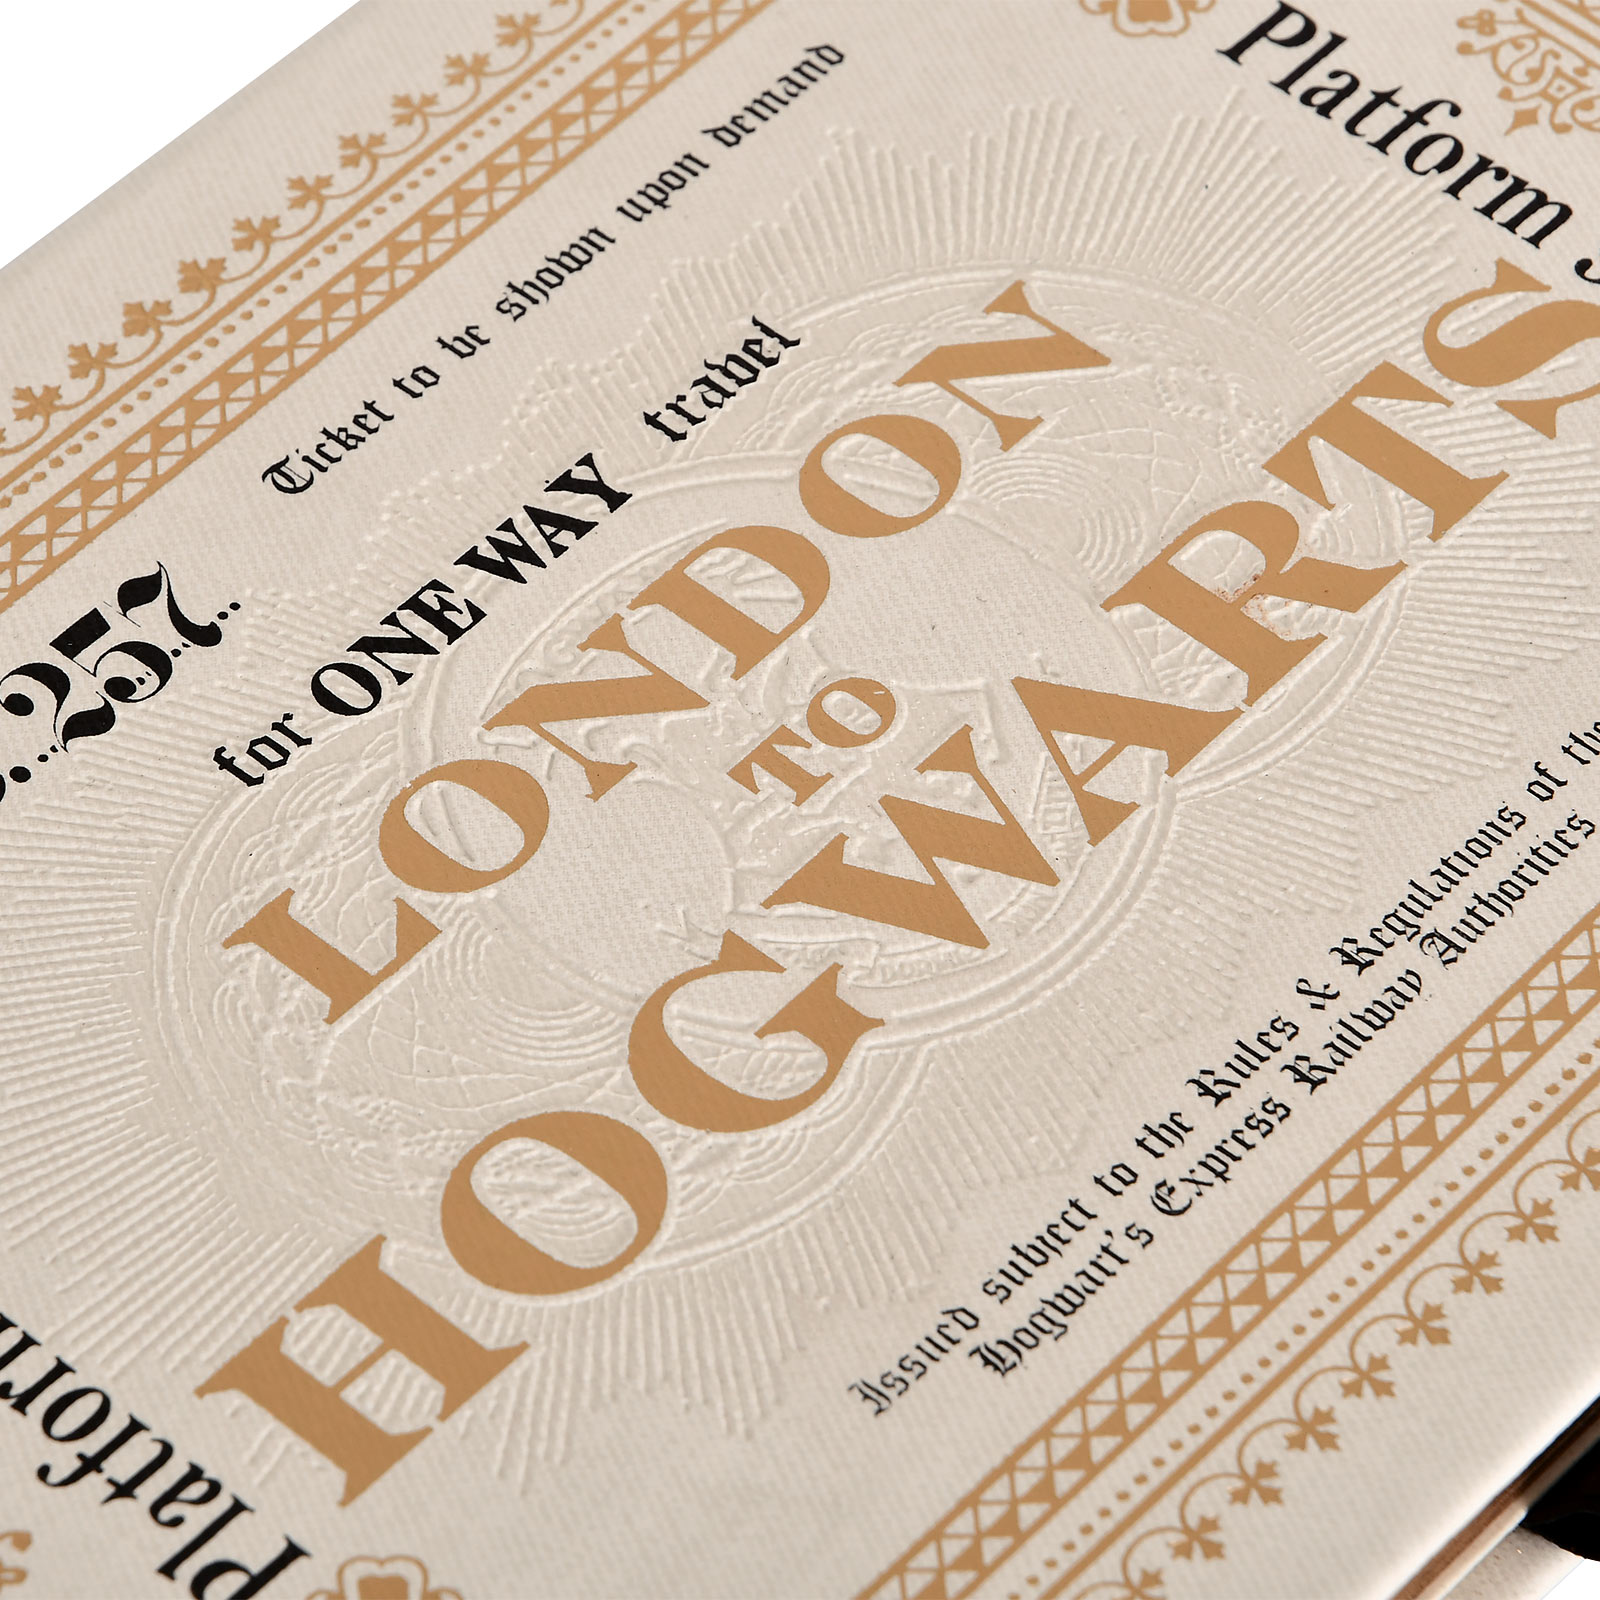 Harry Potter - Hogwarts Express Ticket Premium Notebook A5